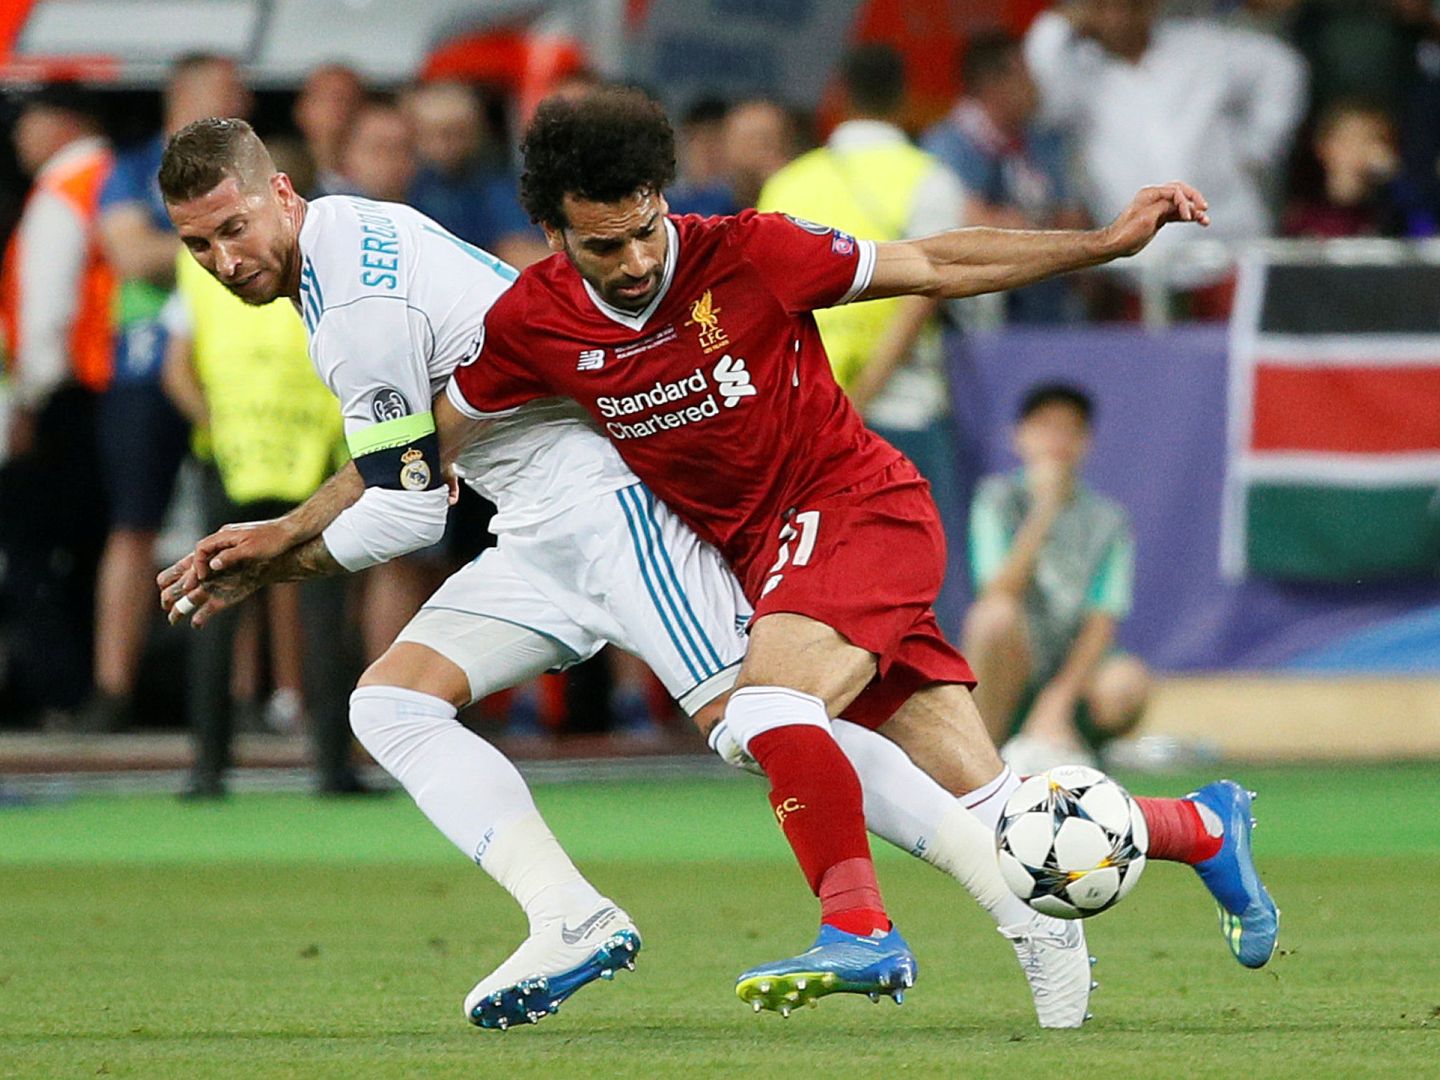 El forcejeo entre Sergio Ramos y Salah que acabó con la lesión del egipcio.